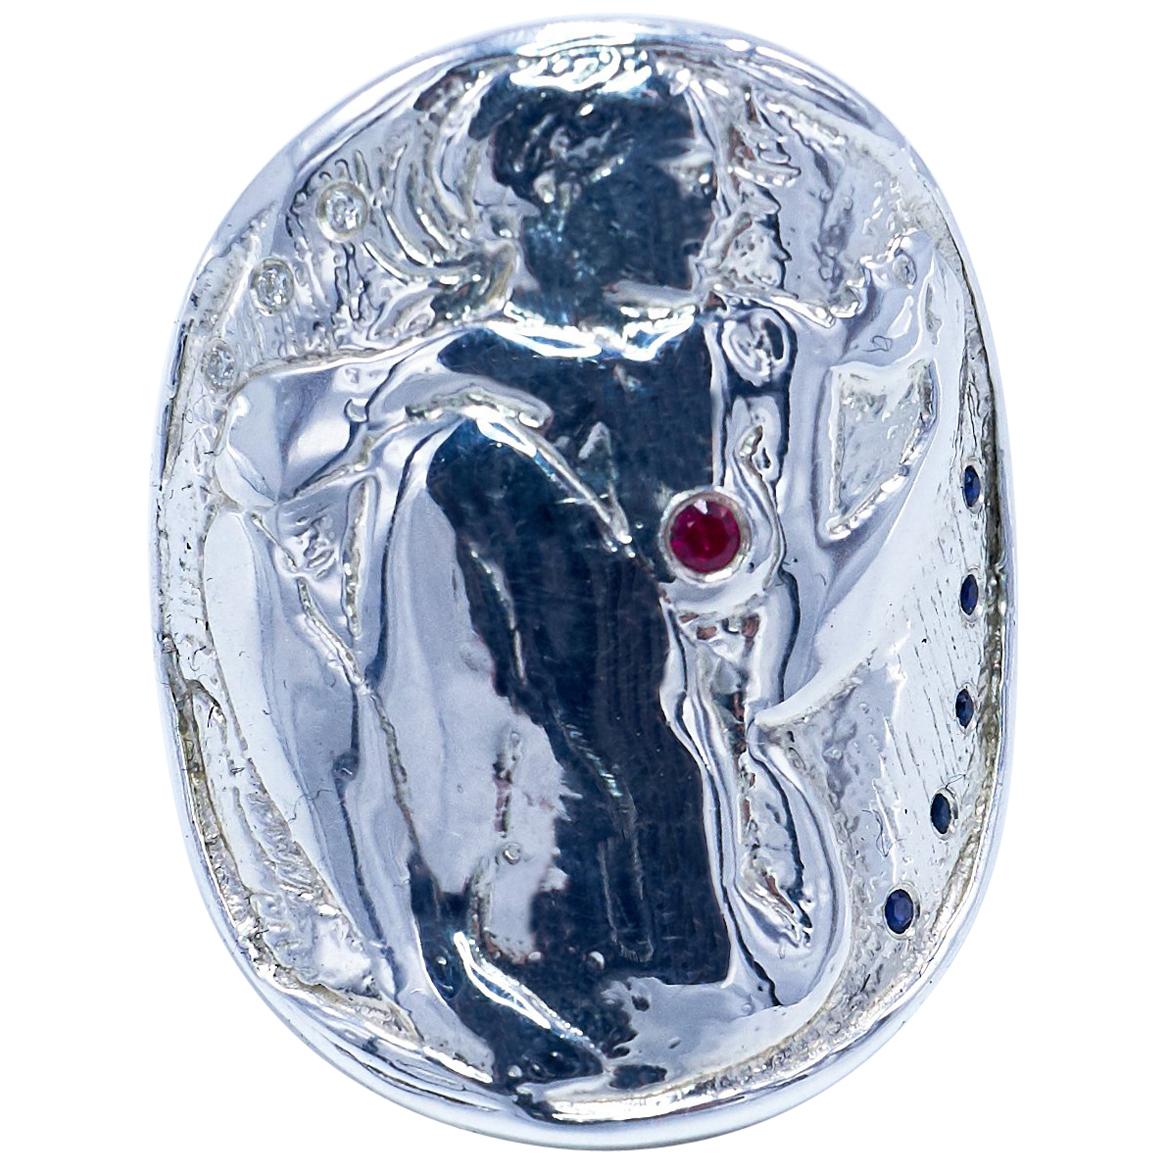 3 Stück Weißer Diamant 1 Stück Rubin 5 Stück Blauer Saphir Medaillenring Münzring mit einer Frau, die eine Maske betrachtet -  Art Nouveau Stil

J DAUPHIN 